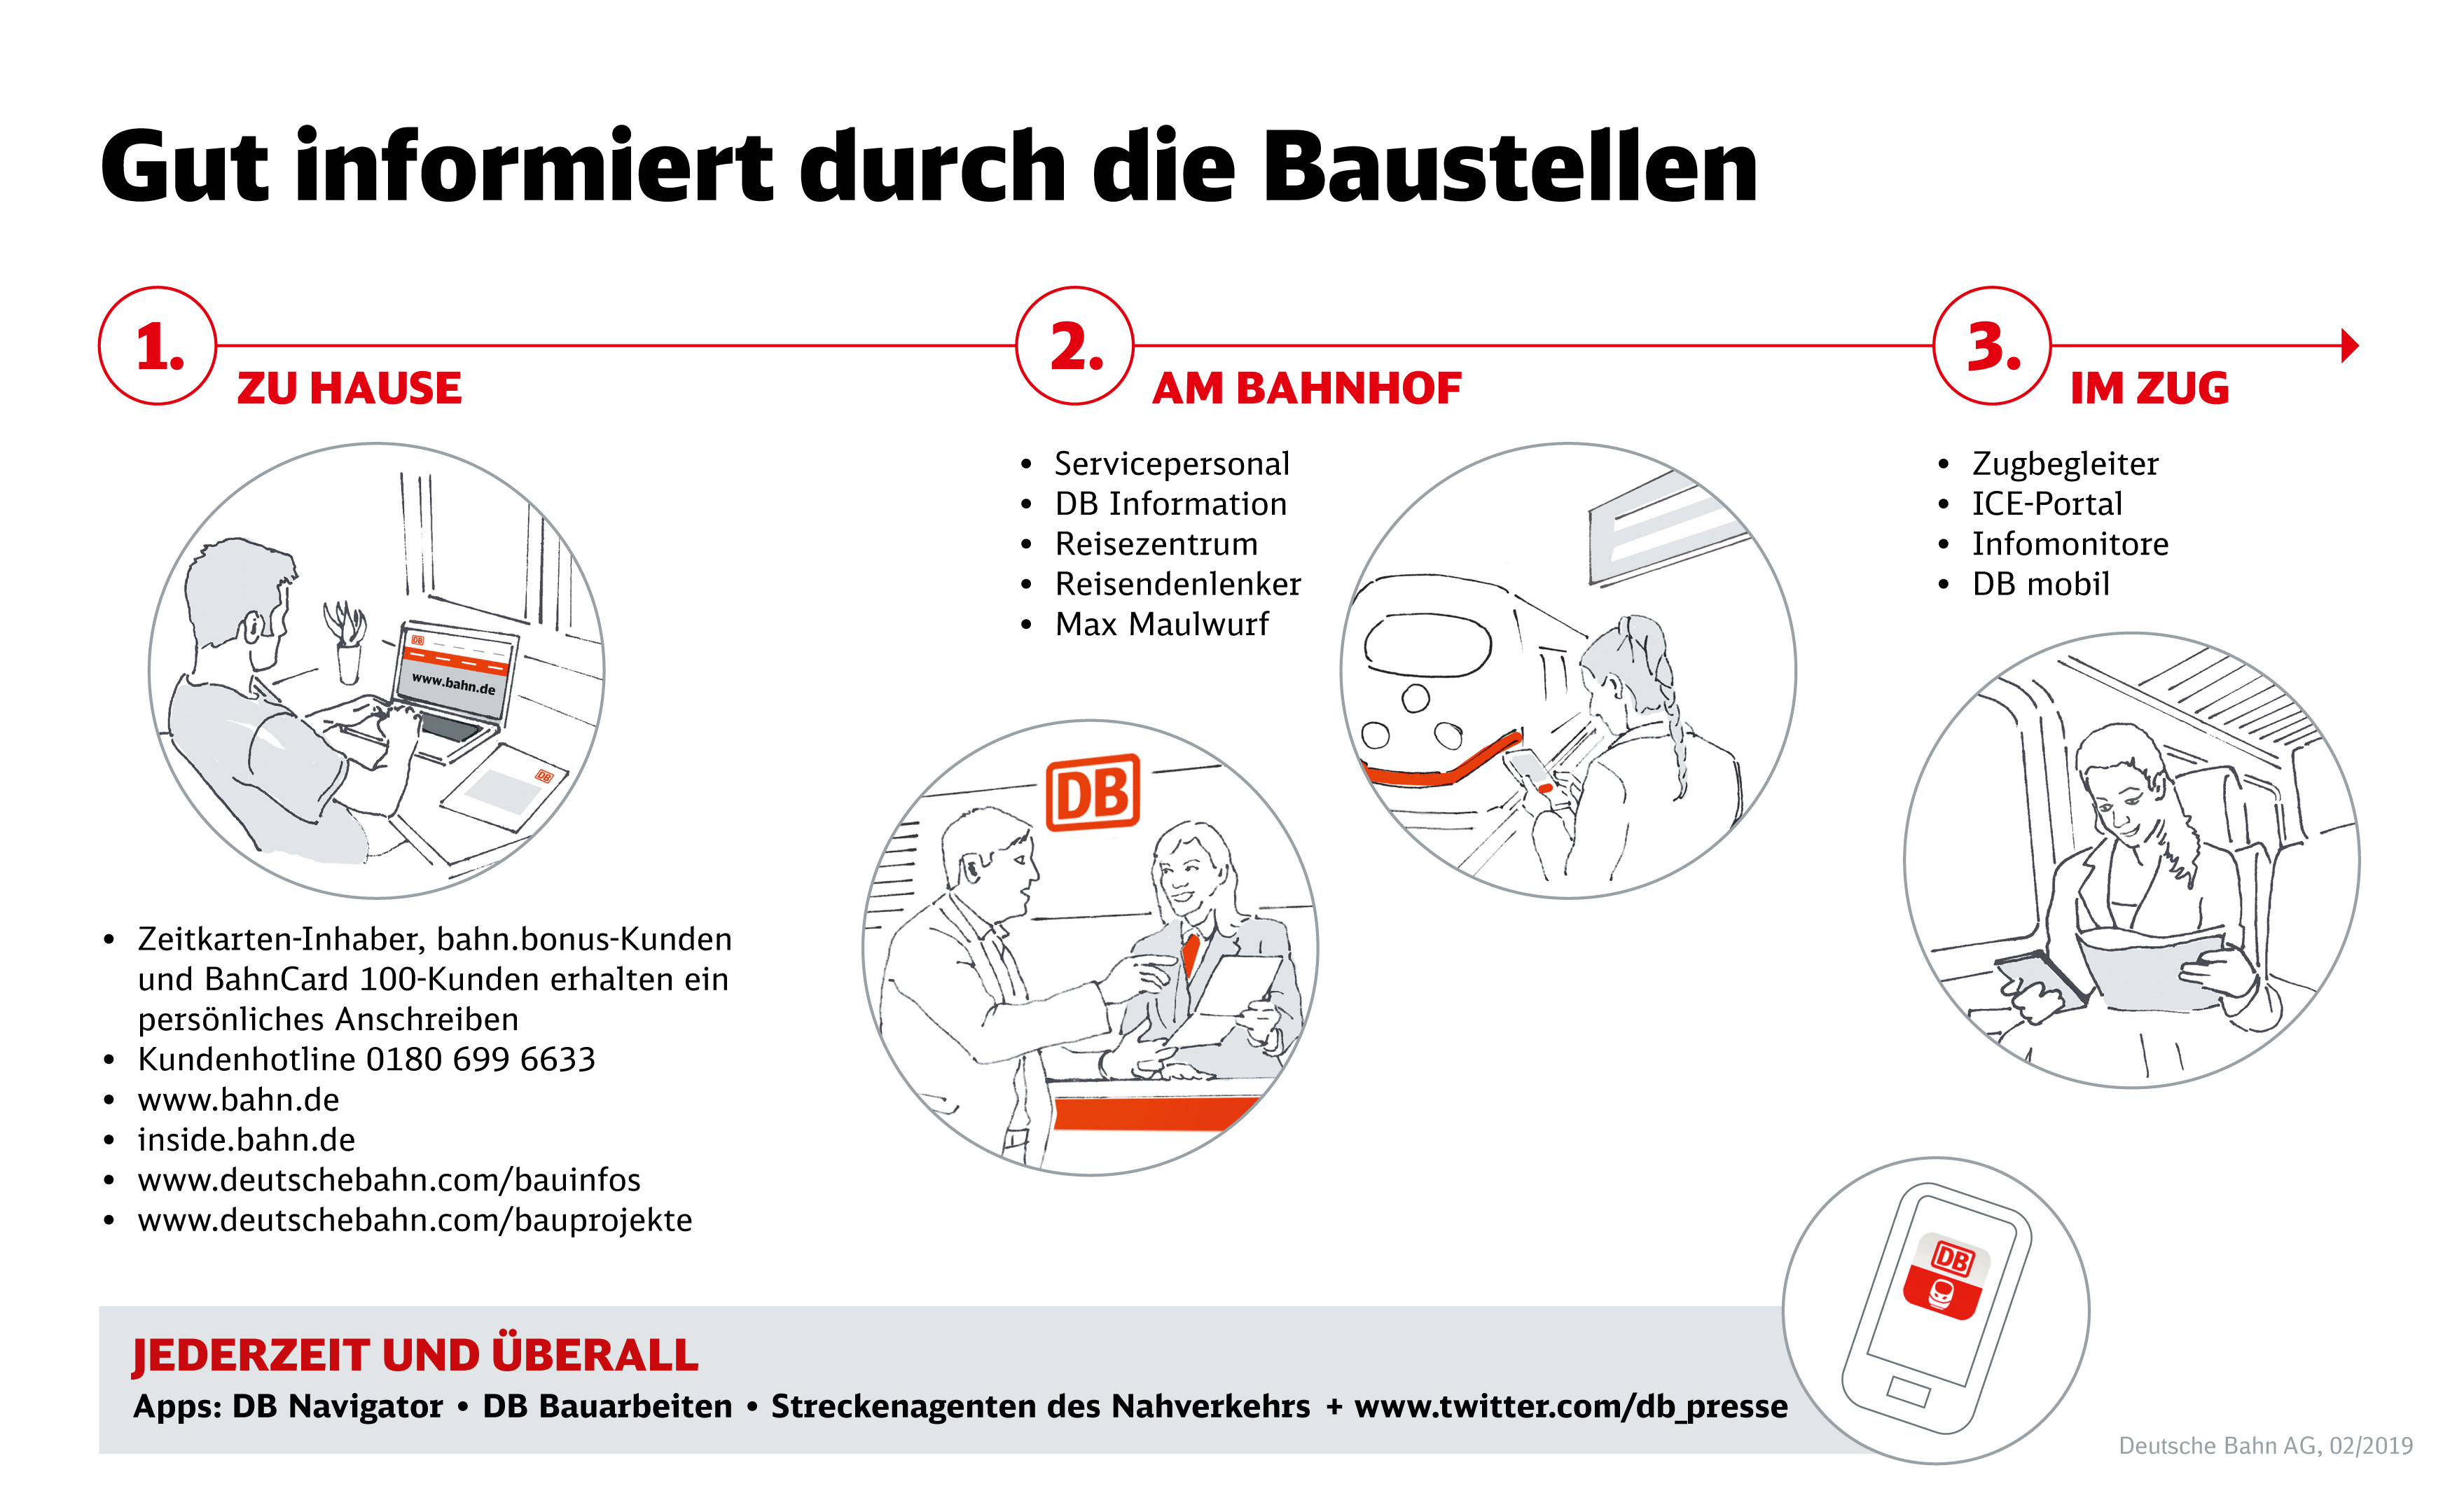 https://www.deutschebahn.com/resource/blob/3784928/d784657779310ba10d1144af4bd3ef72/Infografik-Gut-Informiert-durch-die-Baustellen-data.jpg